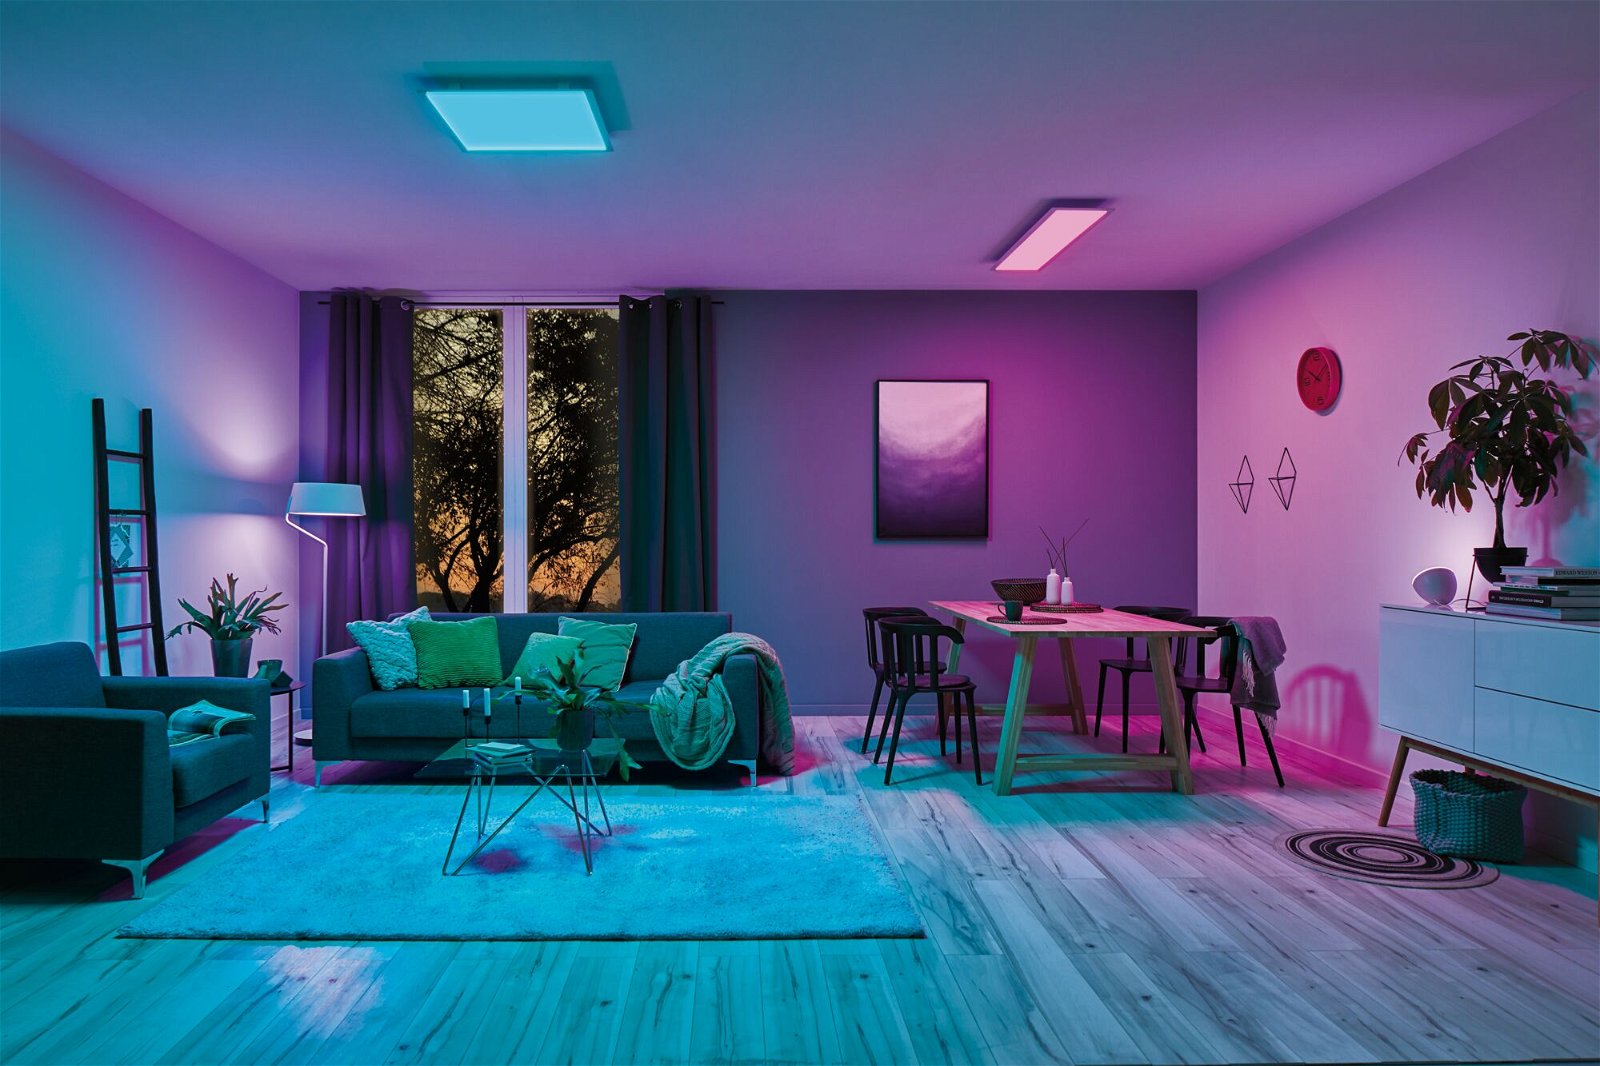 Startsets met prijsvoordeel Zigbee 3.0 Smart Home smik Gateway + LED paneel Amaris